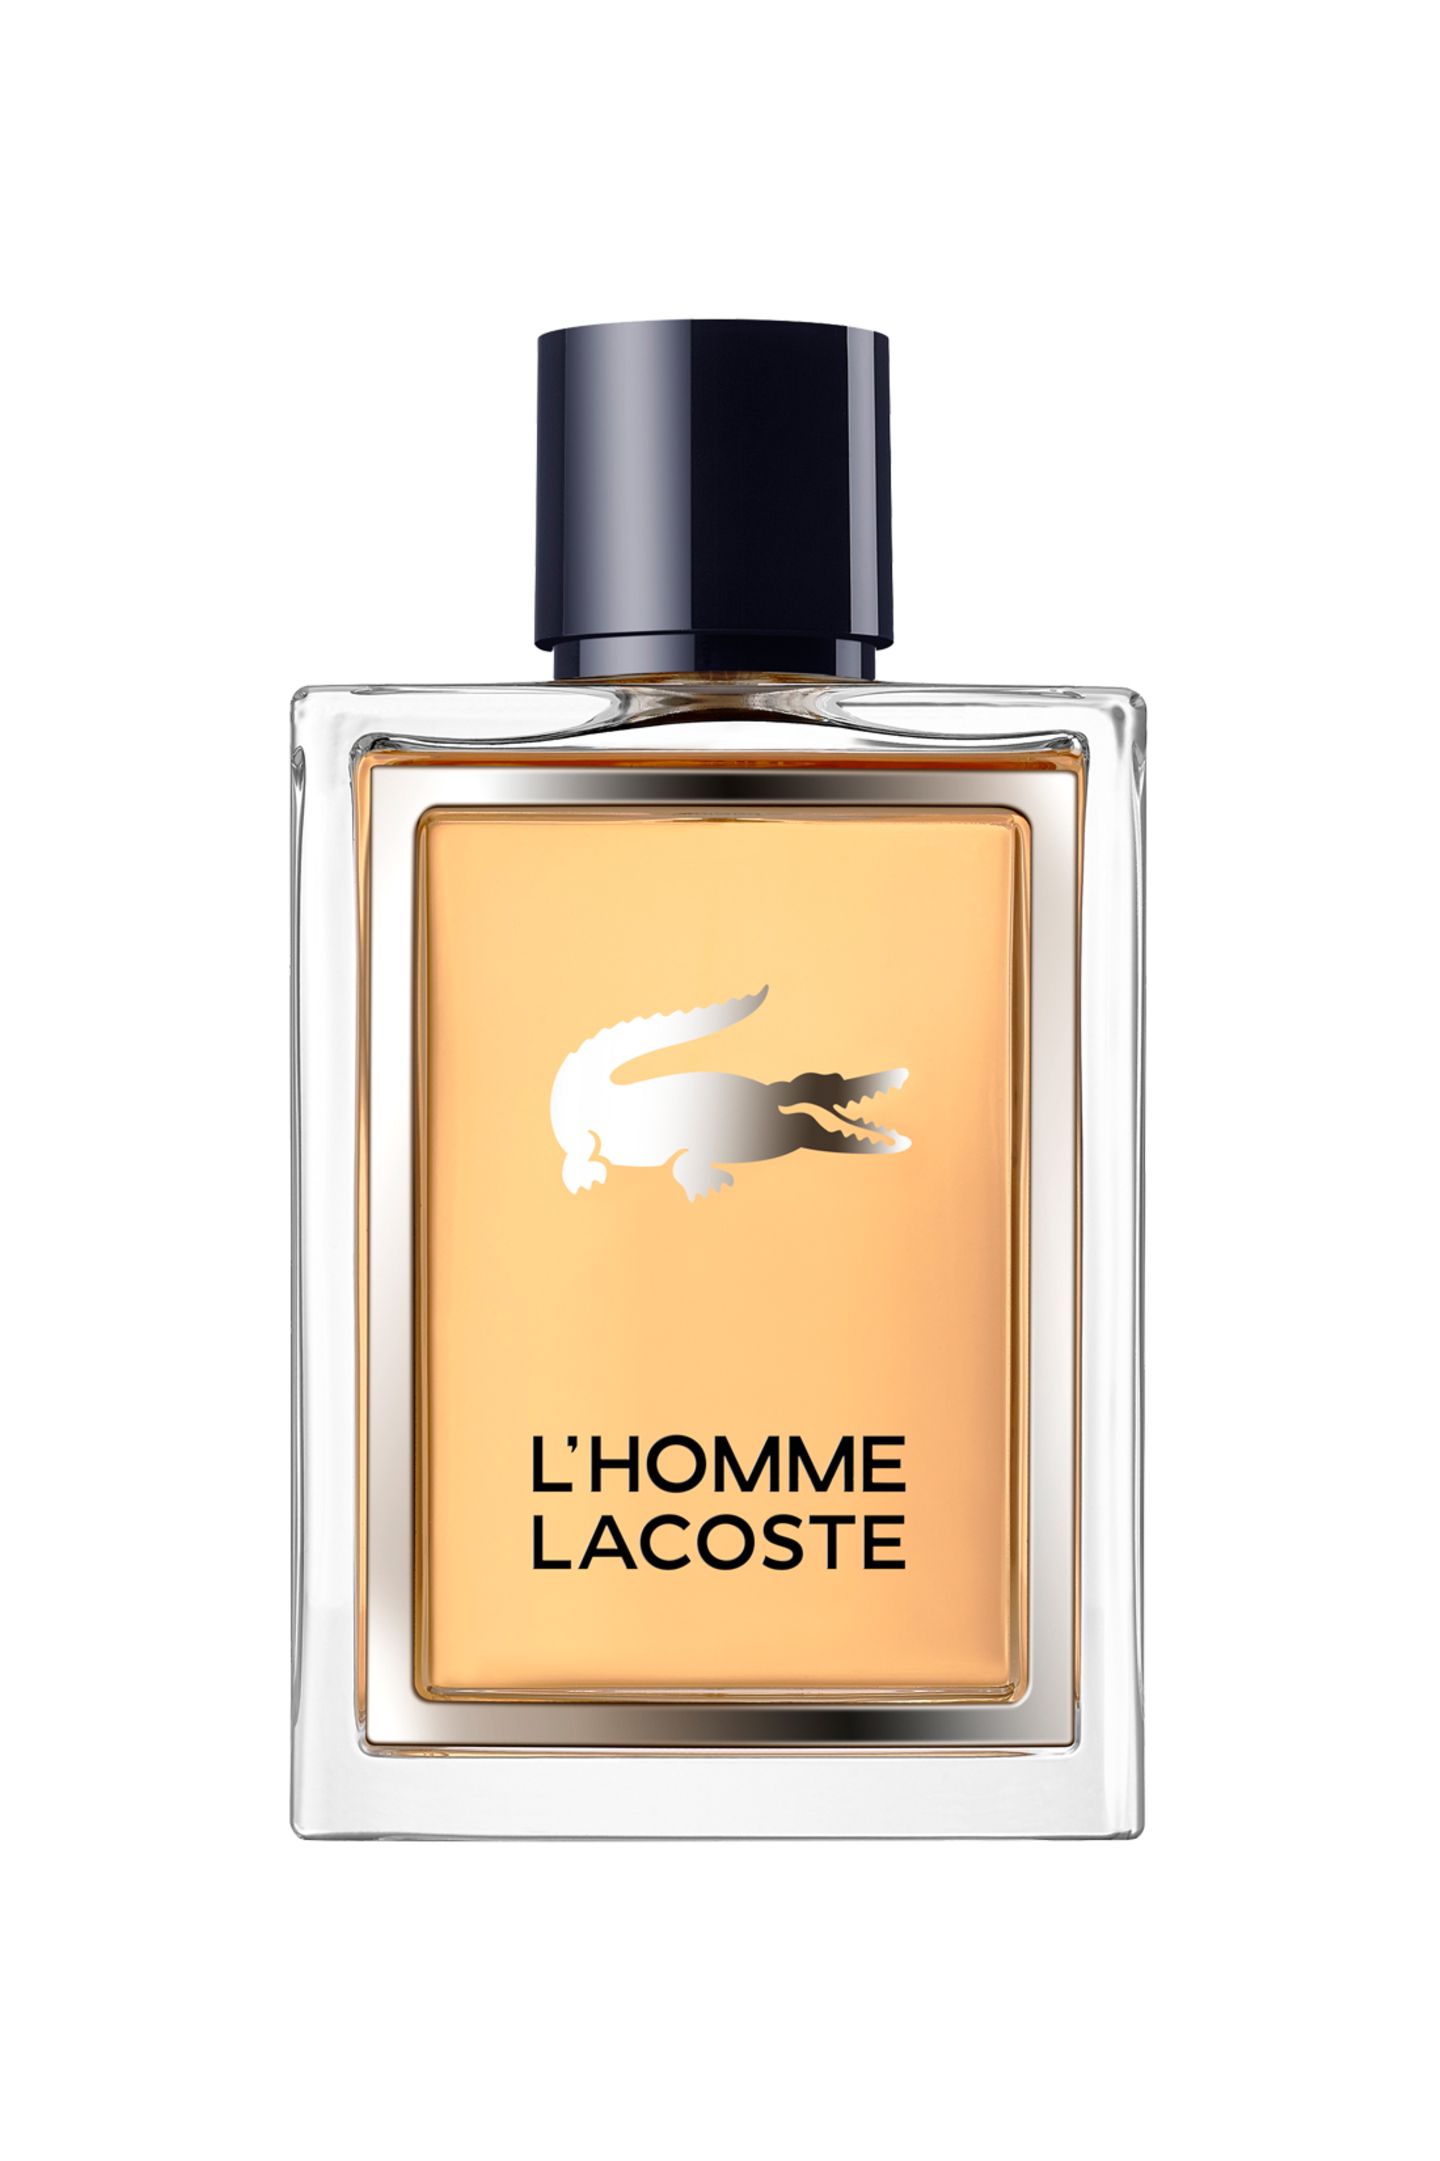 Für sportlich-elegante Typen, mit Mandarine, Mandel und Amber: "L’Homme Lacoste" von Lacoste, EdT, 50 ml, ca. 55 Euro